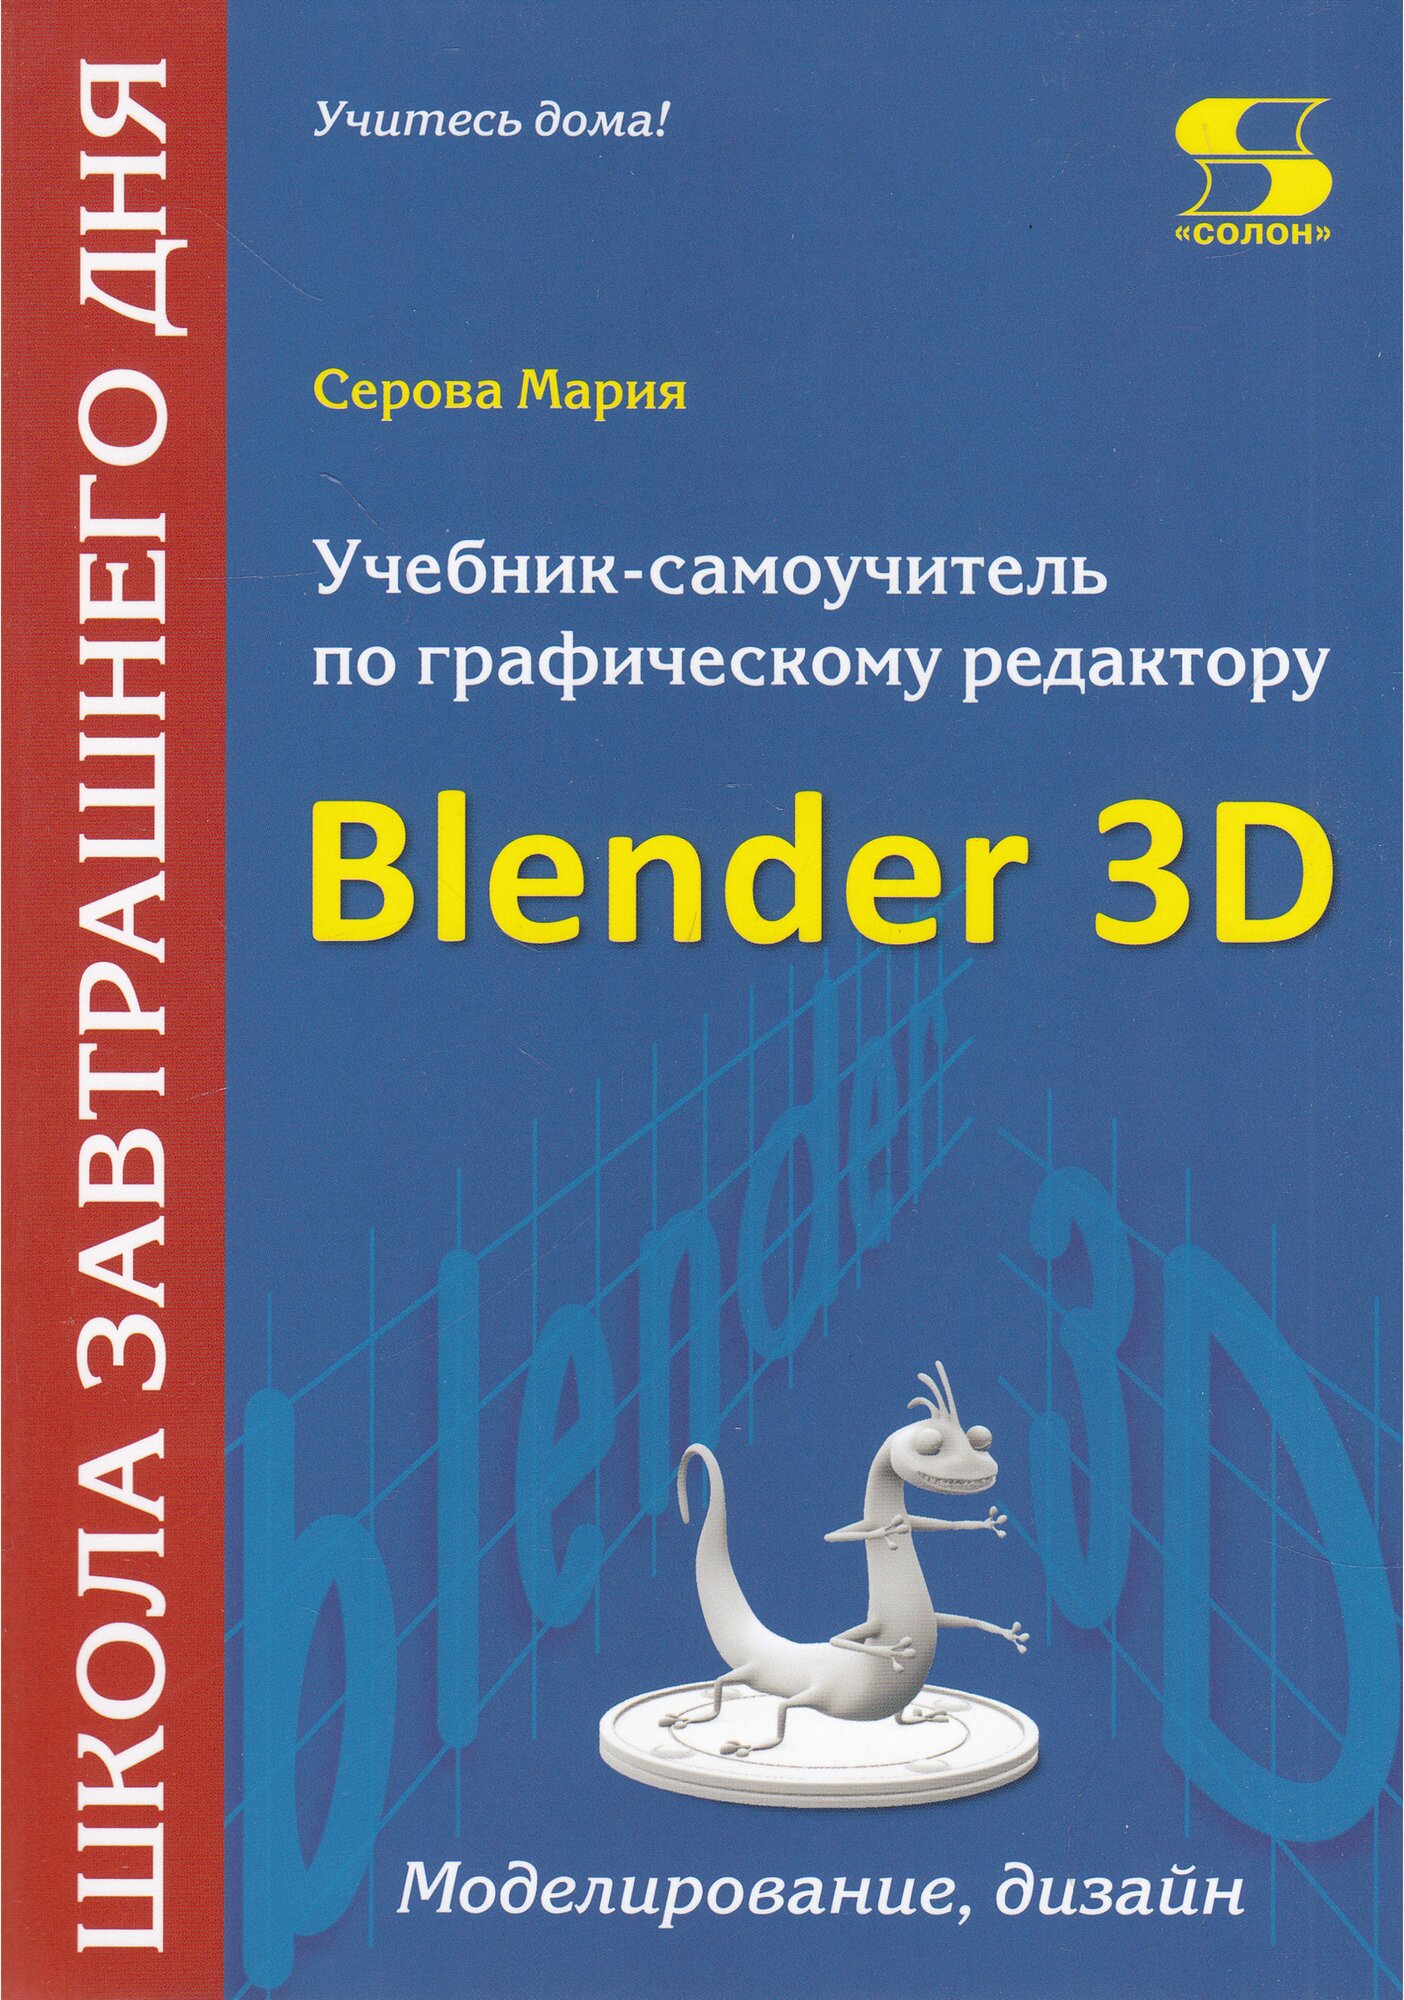 Учебник-самоучитель по трехмерной графике в Blender 3D. Моделирование, дизайн, анимация, спецэффекты - фото №1